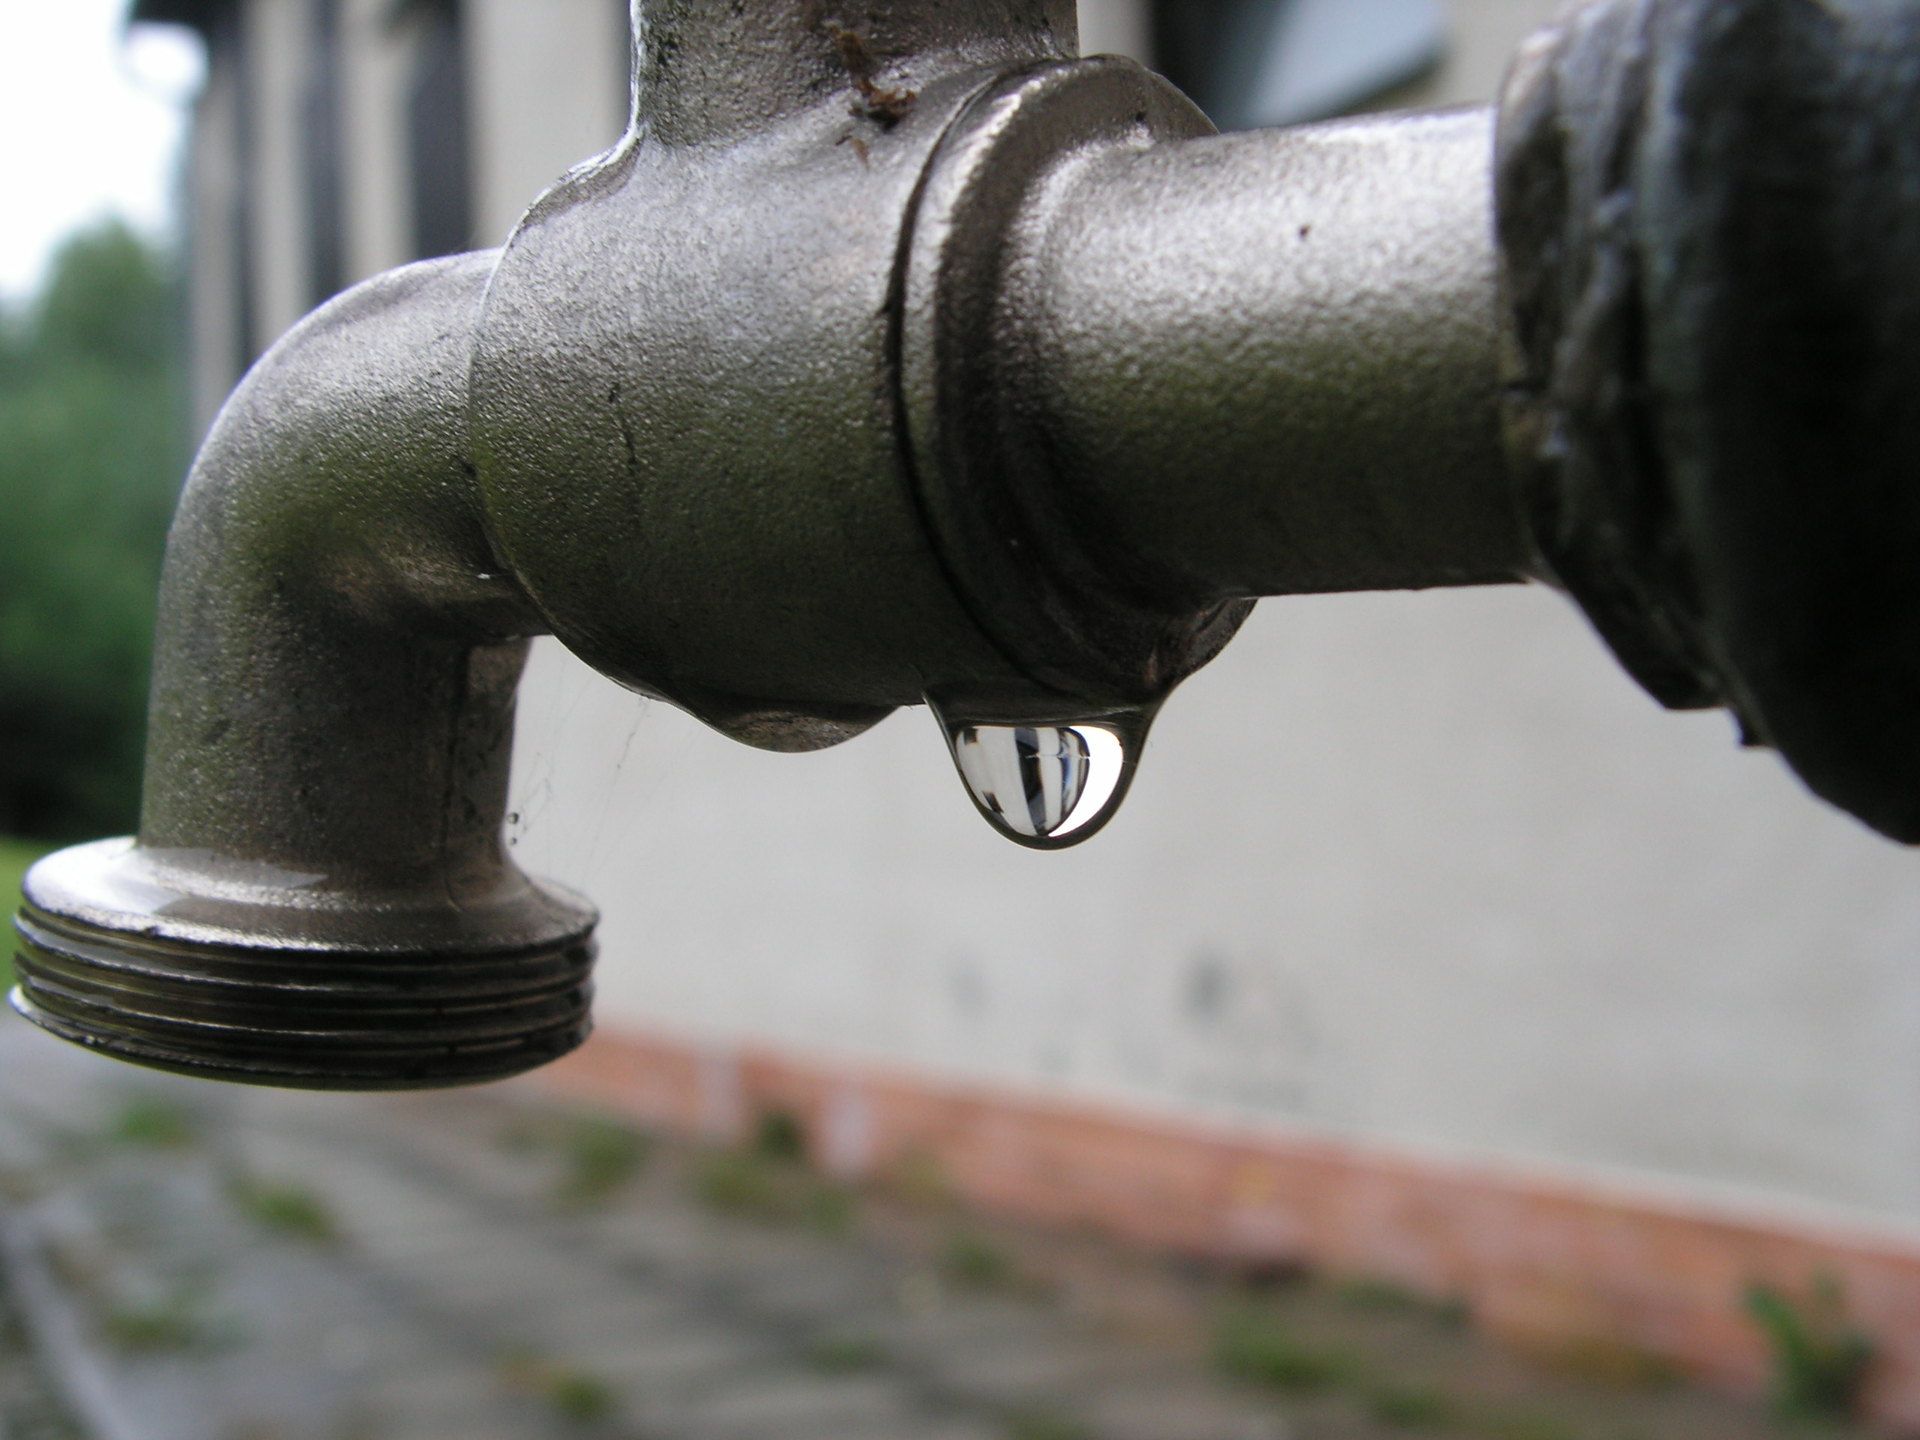 leaking-faucet-repair.